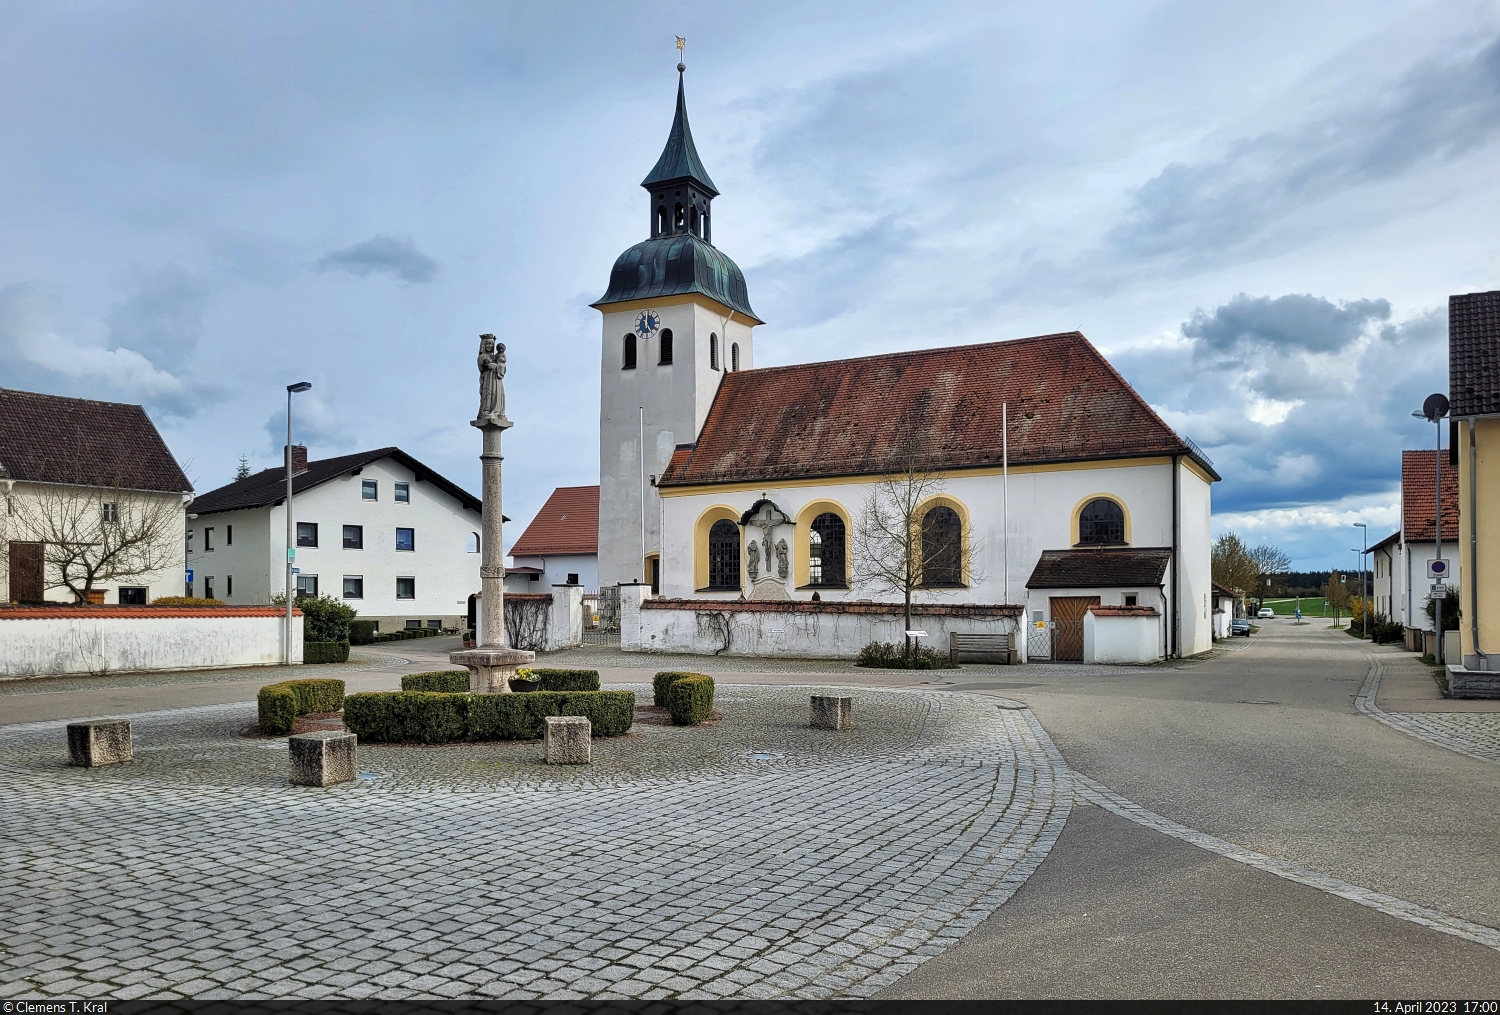 Dorfplatz von Pietenfeld (Adelschlag) mit Kirche  St. Michael  und Mariensule.

🕓 14.4.2023 | 17:00 Uhr